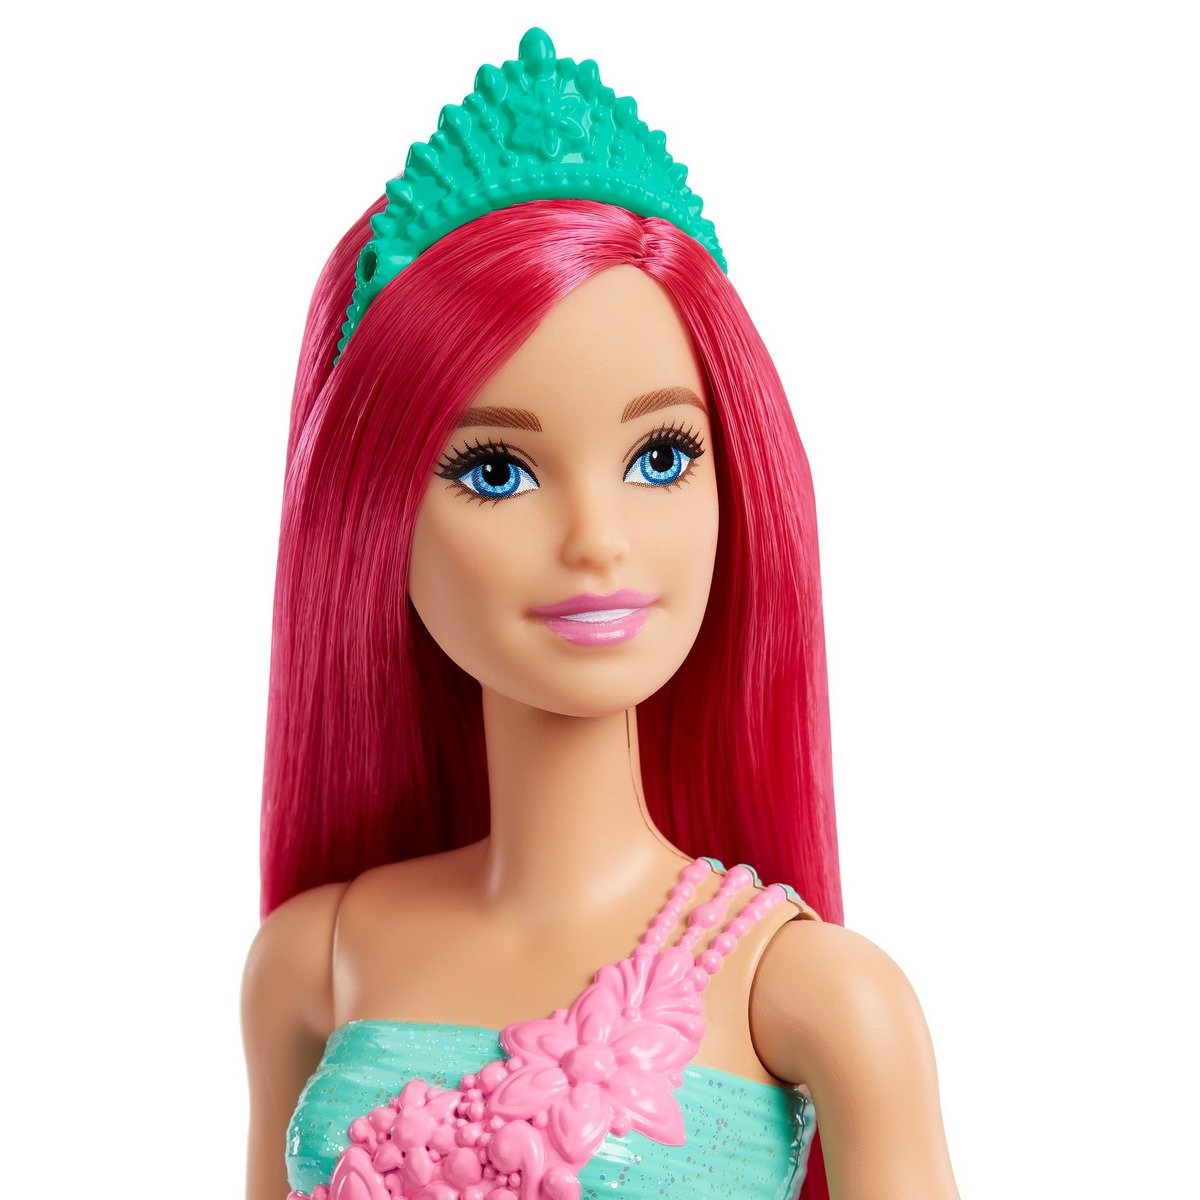 Poupée Barbie Princesse